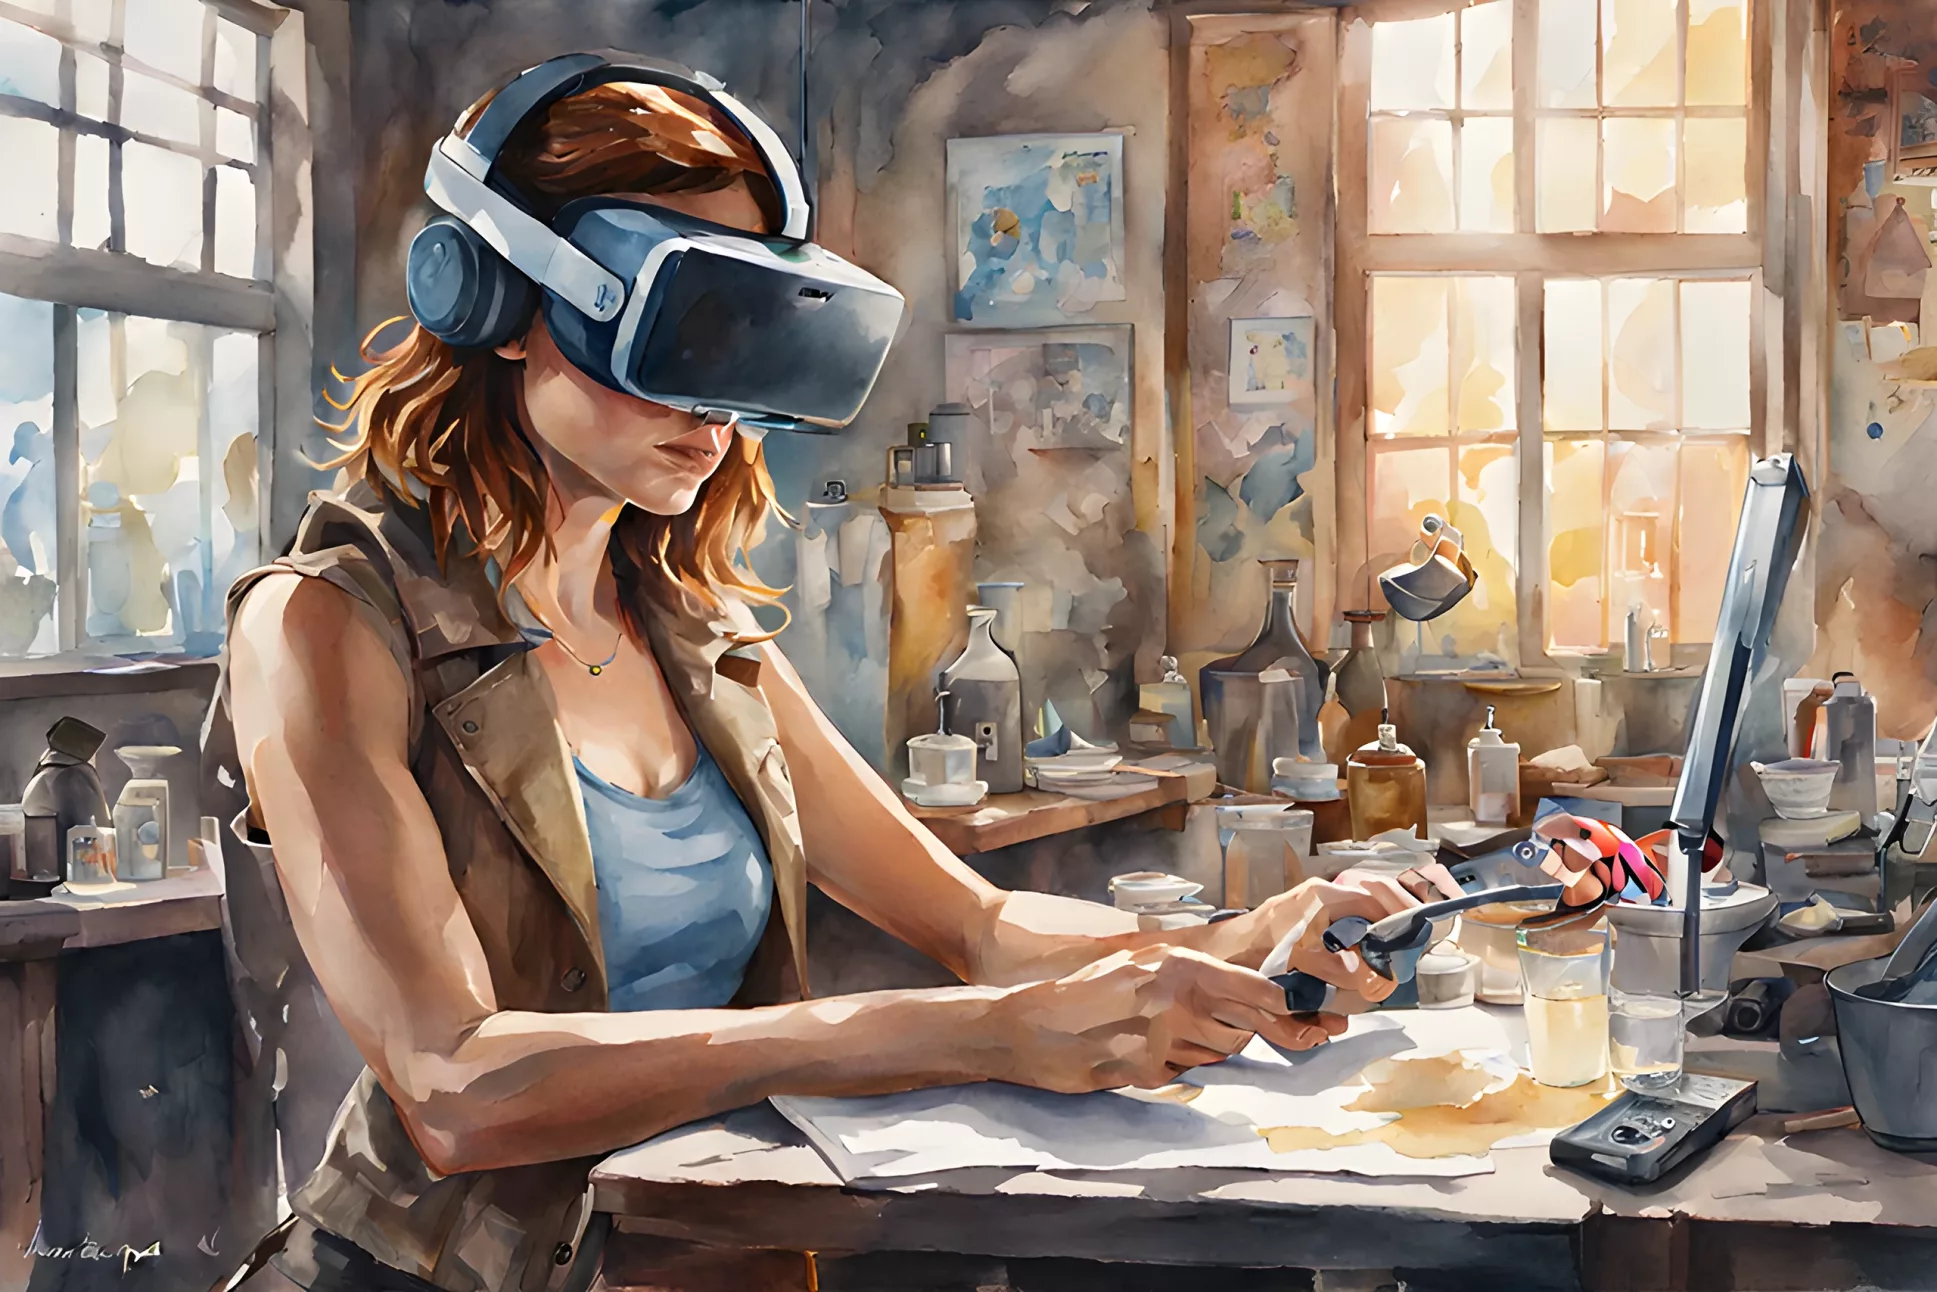 Wie Virtuelle Realität im Unternehmen einführen?